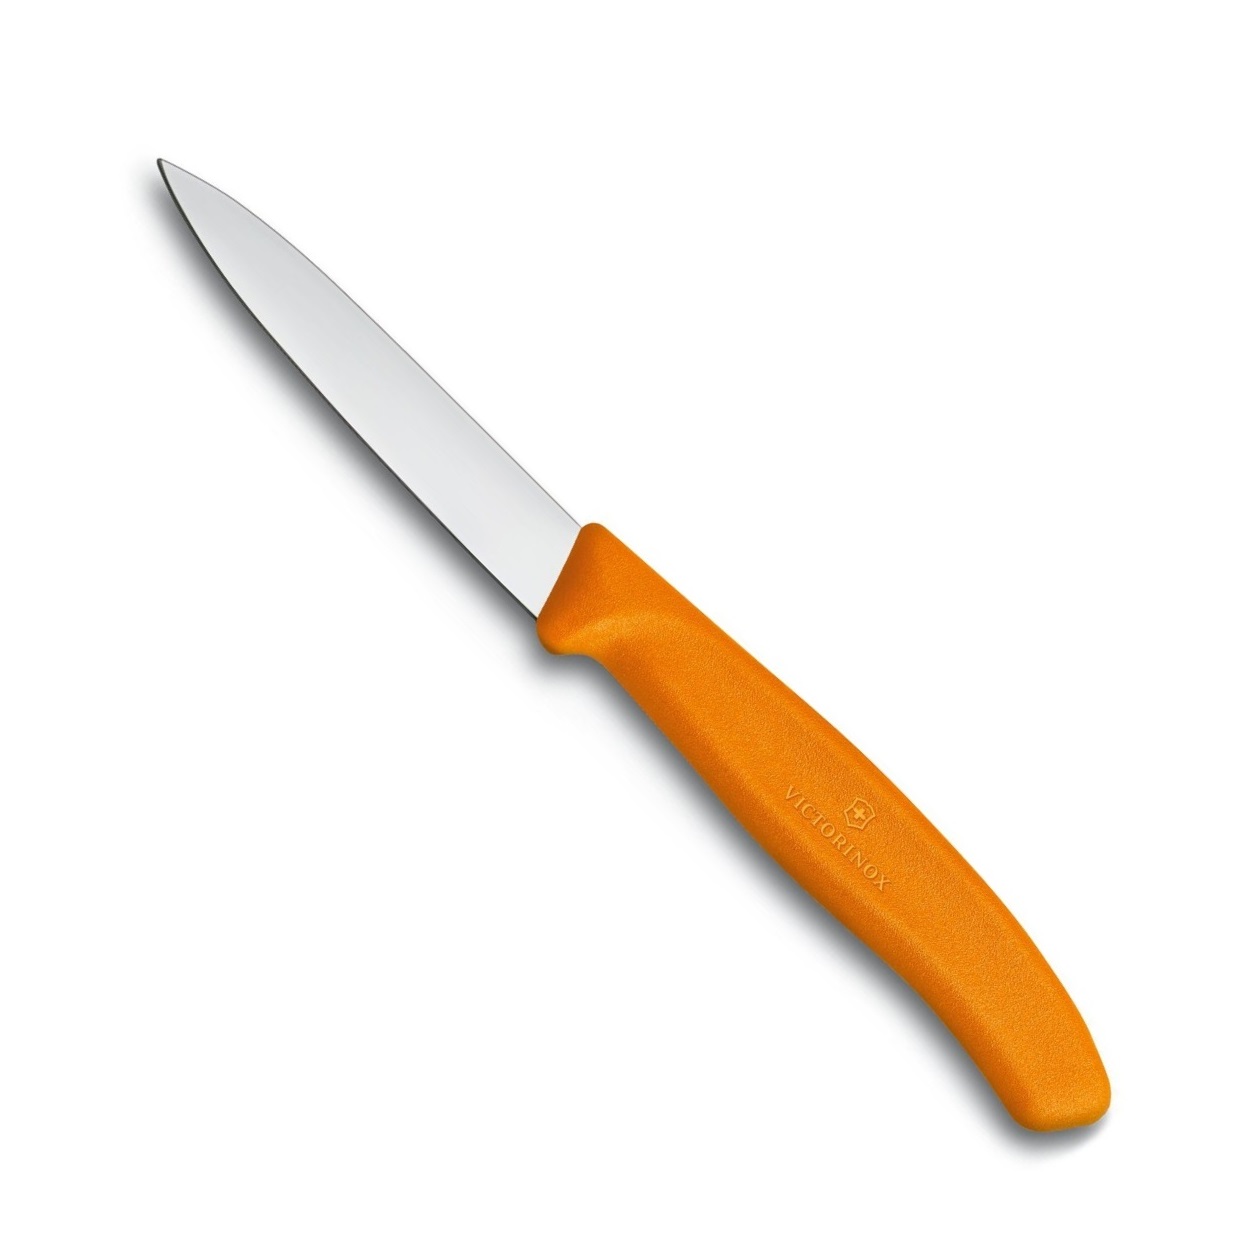 Nůž na zeleninu SWISS CLASSIC, oranžový 8 cm - Victorinox